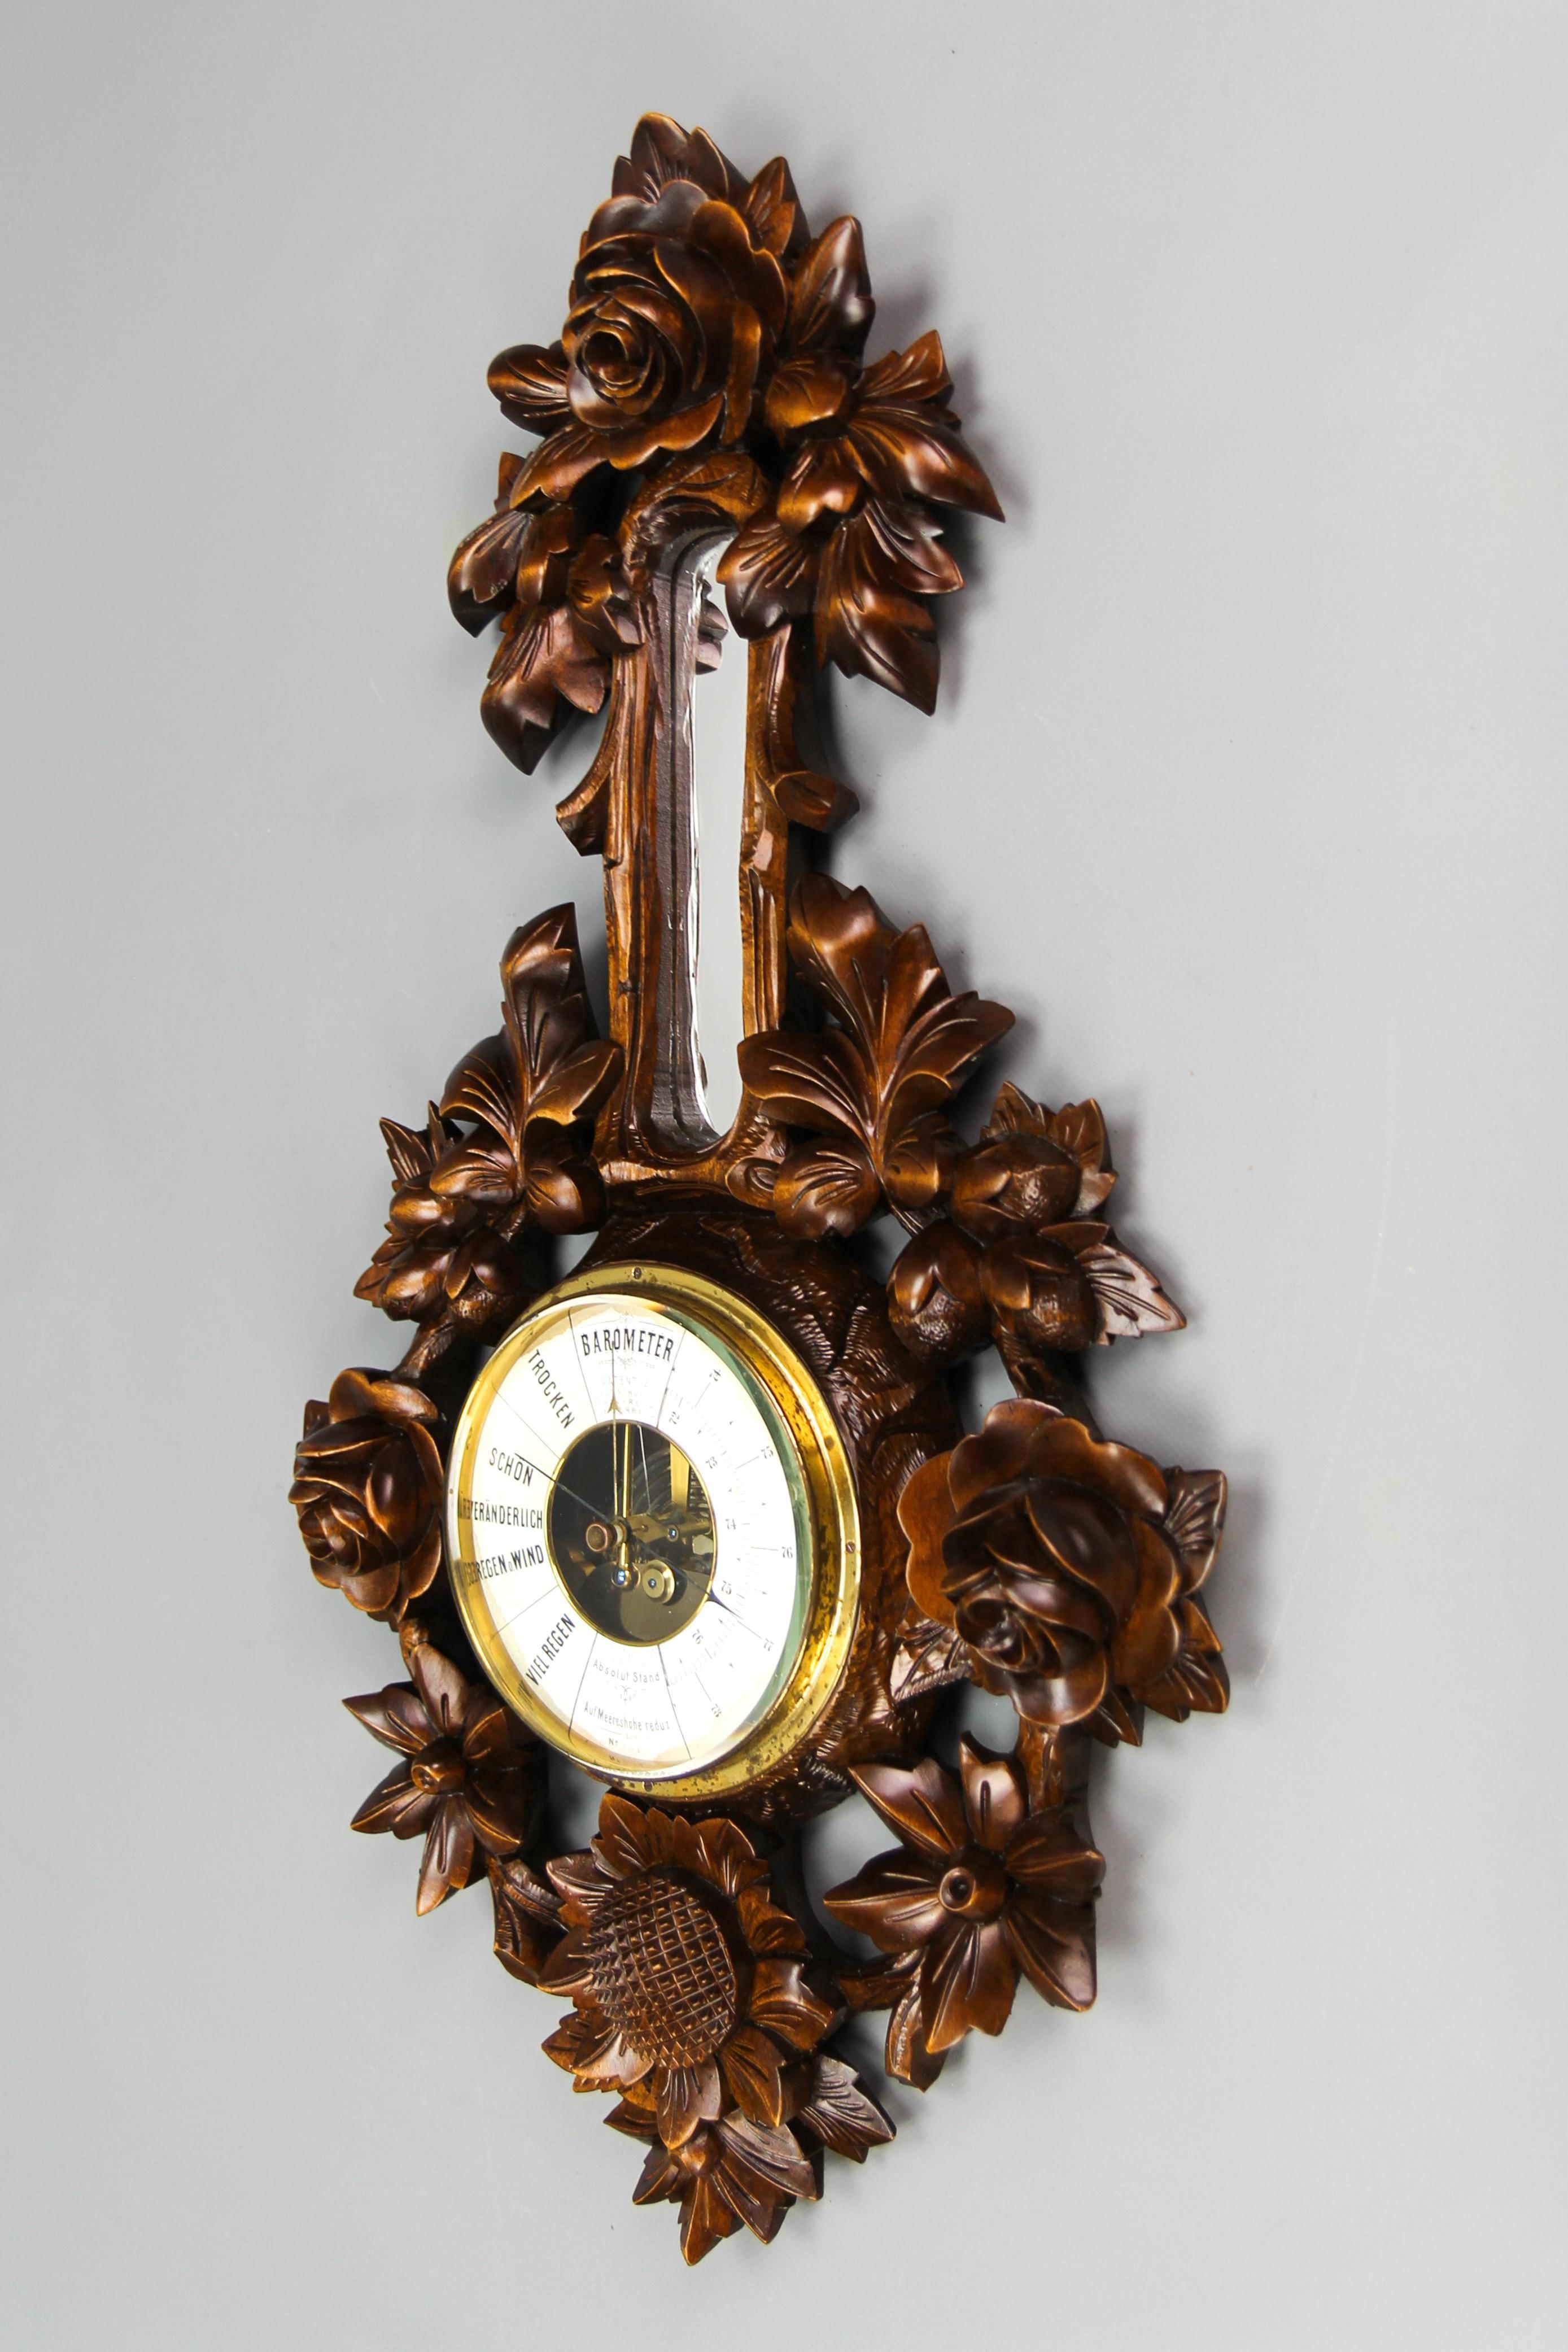 Barometer aus geschnitztem Nussbaumholz im Schwarzwaldstil, Deutschland, ca. 1920.
Ein beeindruckendes geschnitztes Barometer aus Nussbaumholz mit meisterhaft geschnitzten Blumen und Blättern. Ein kleiner Spiegel auf der Oberseite des runden